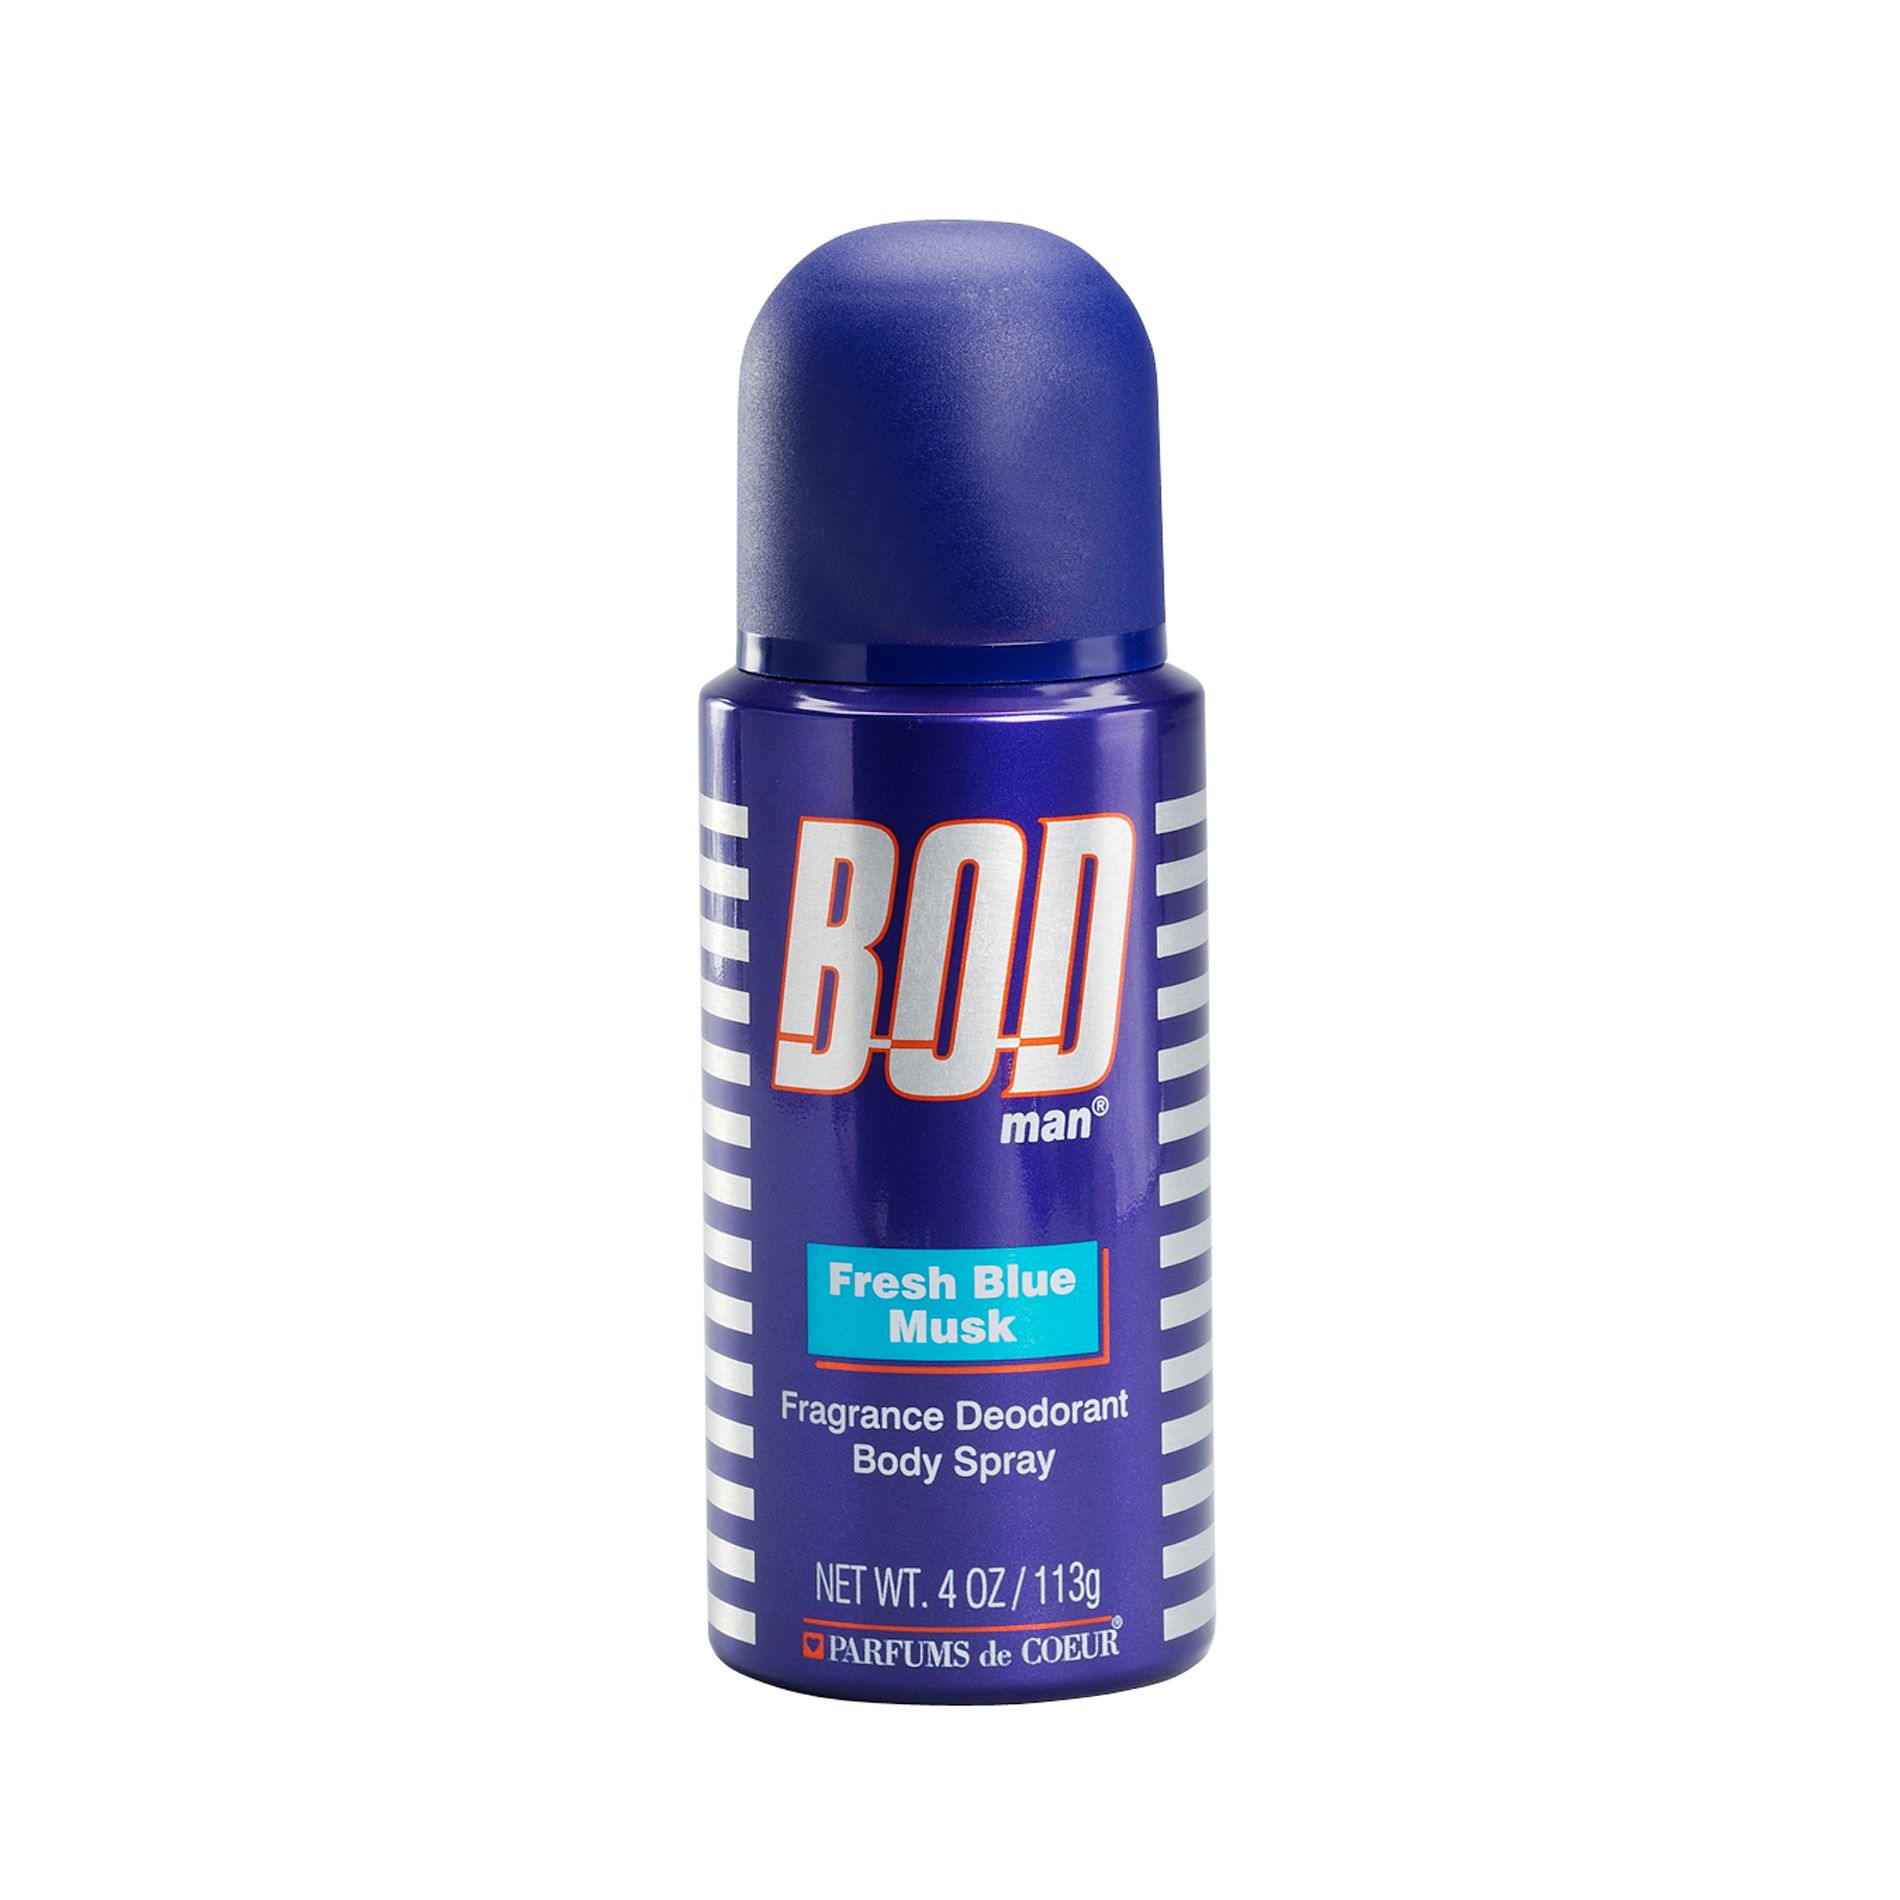 BOD Man 4 oz. Deodorant Body Spray Fresh Blue Musk